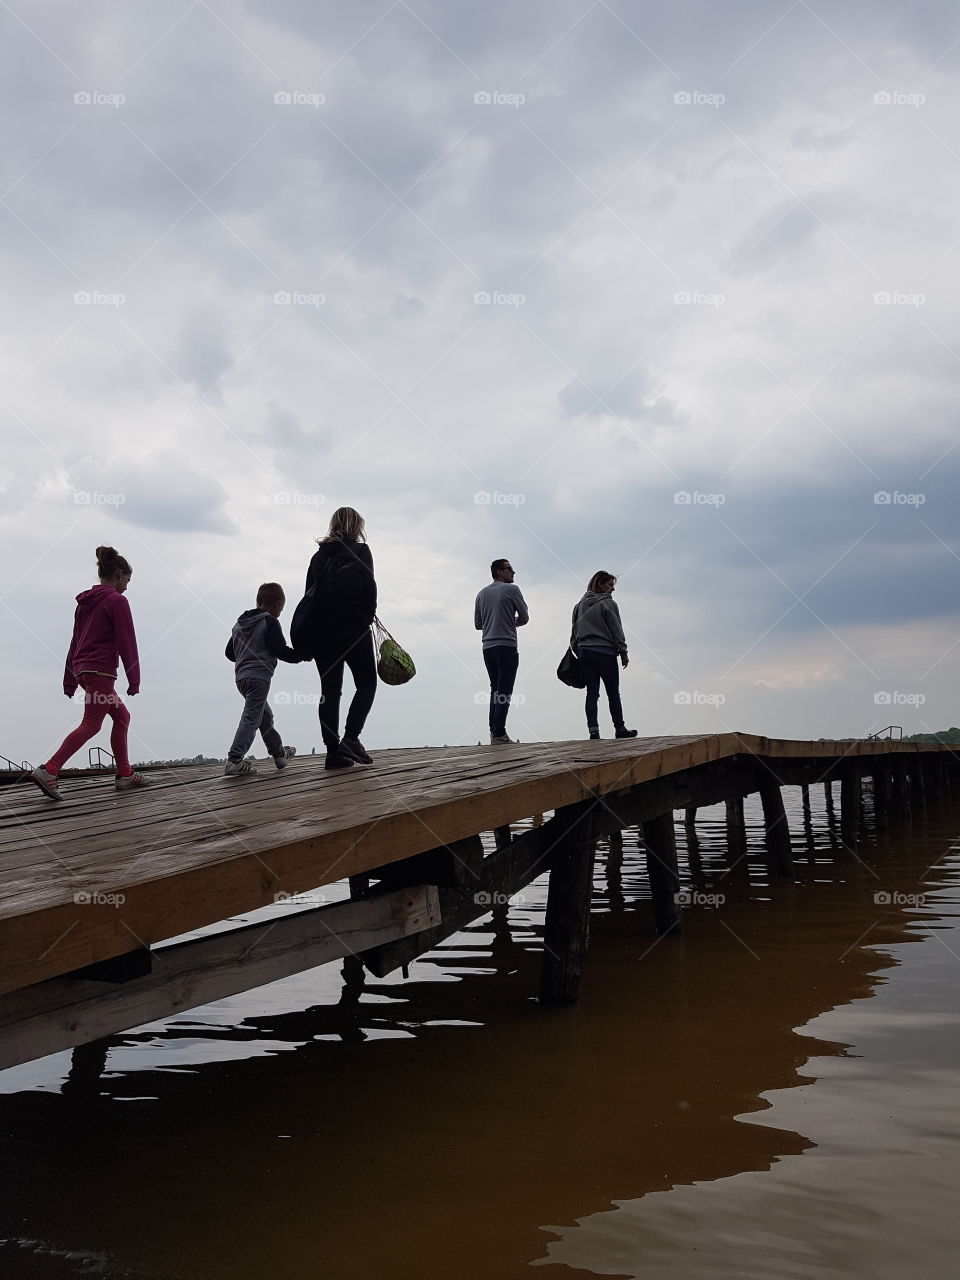 people walking on lake dock